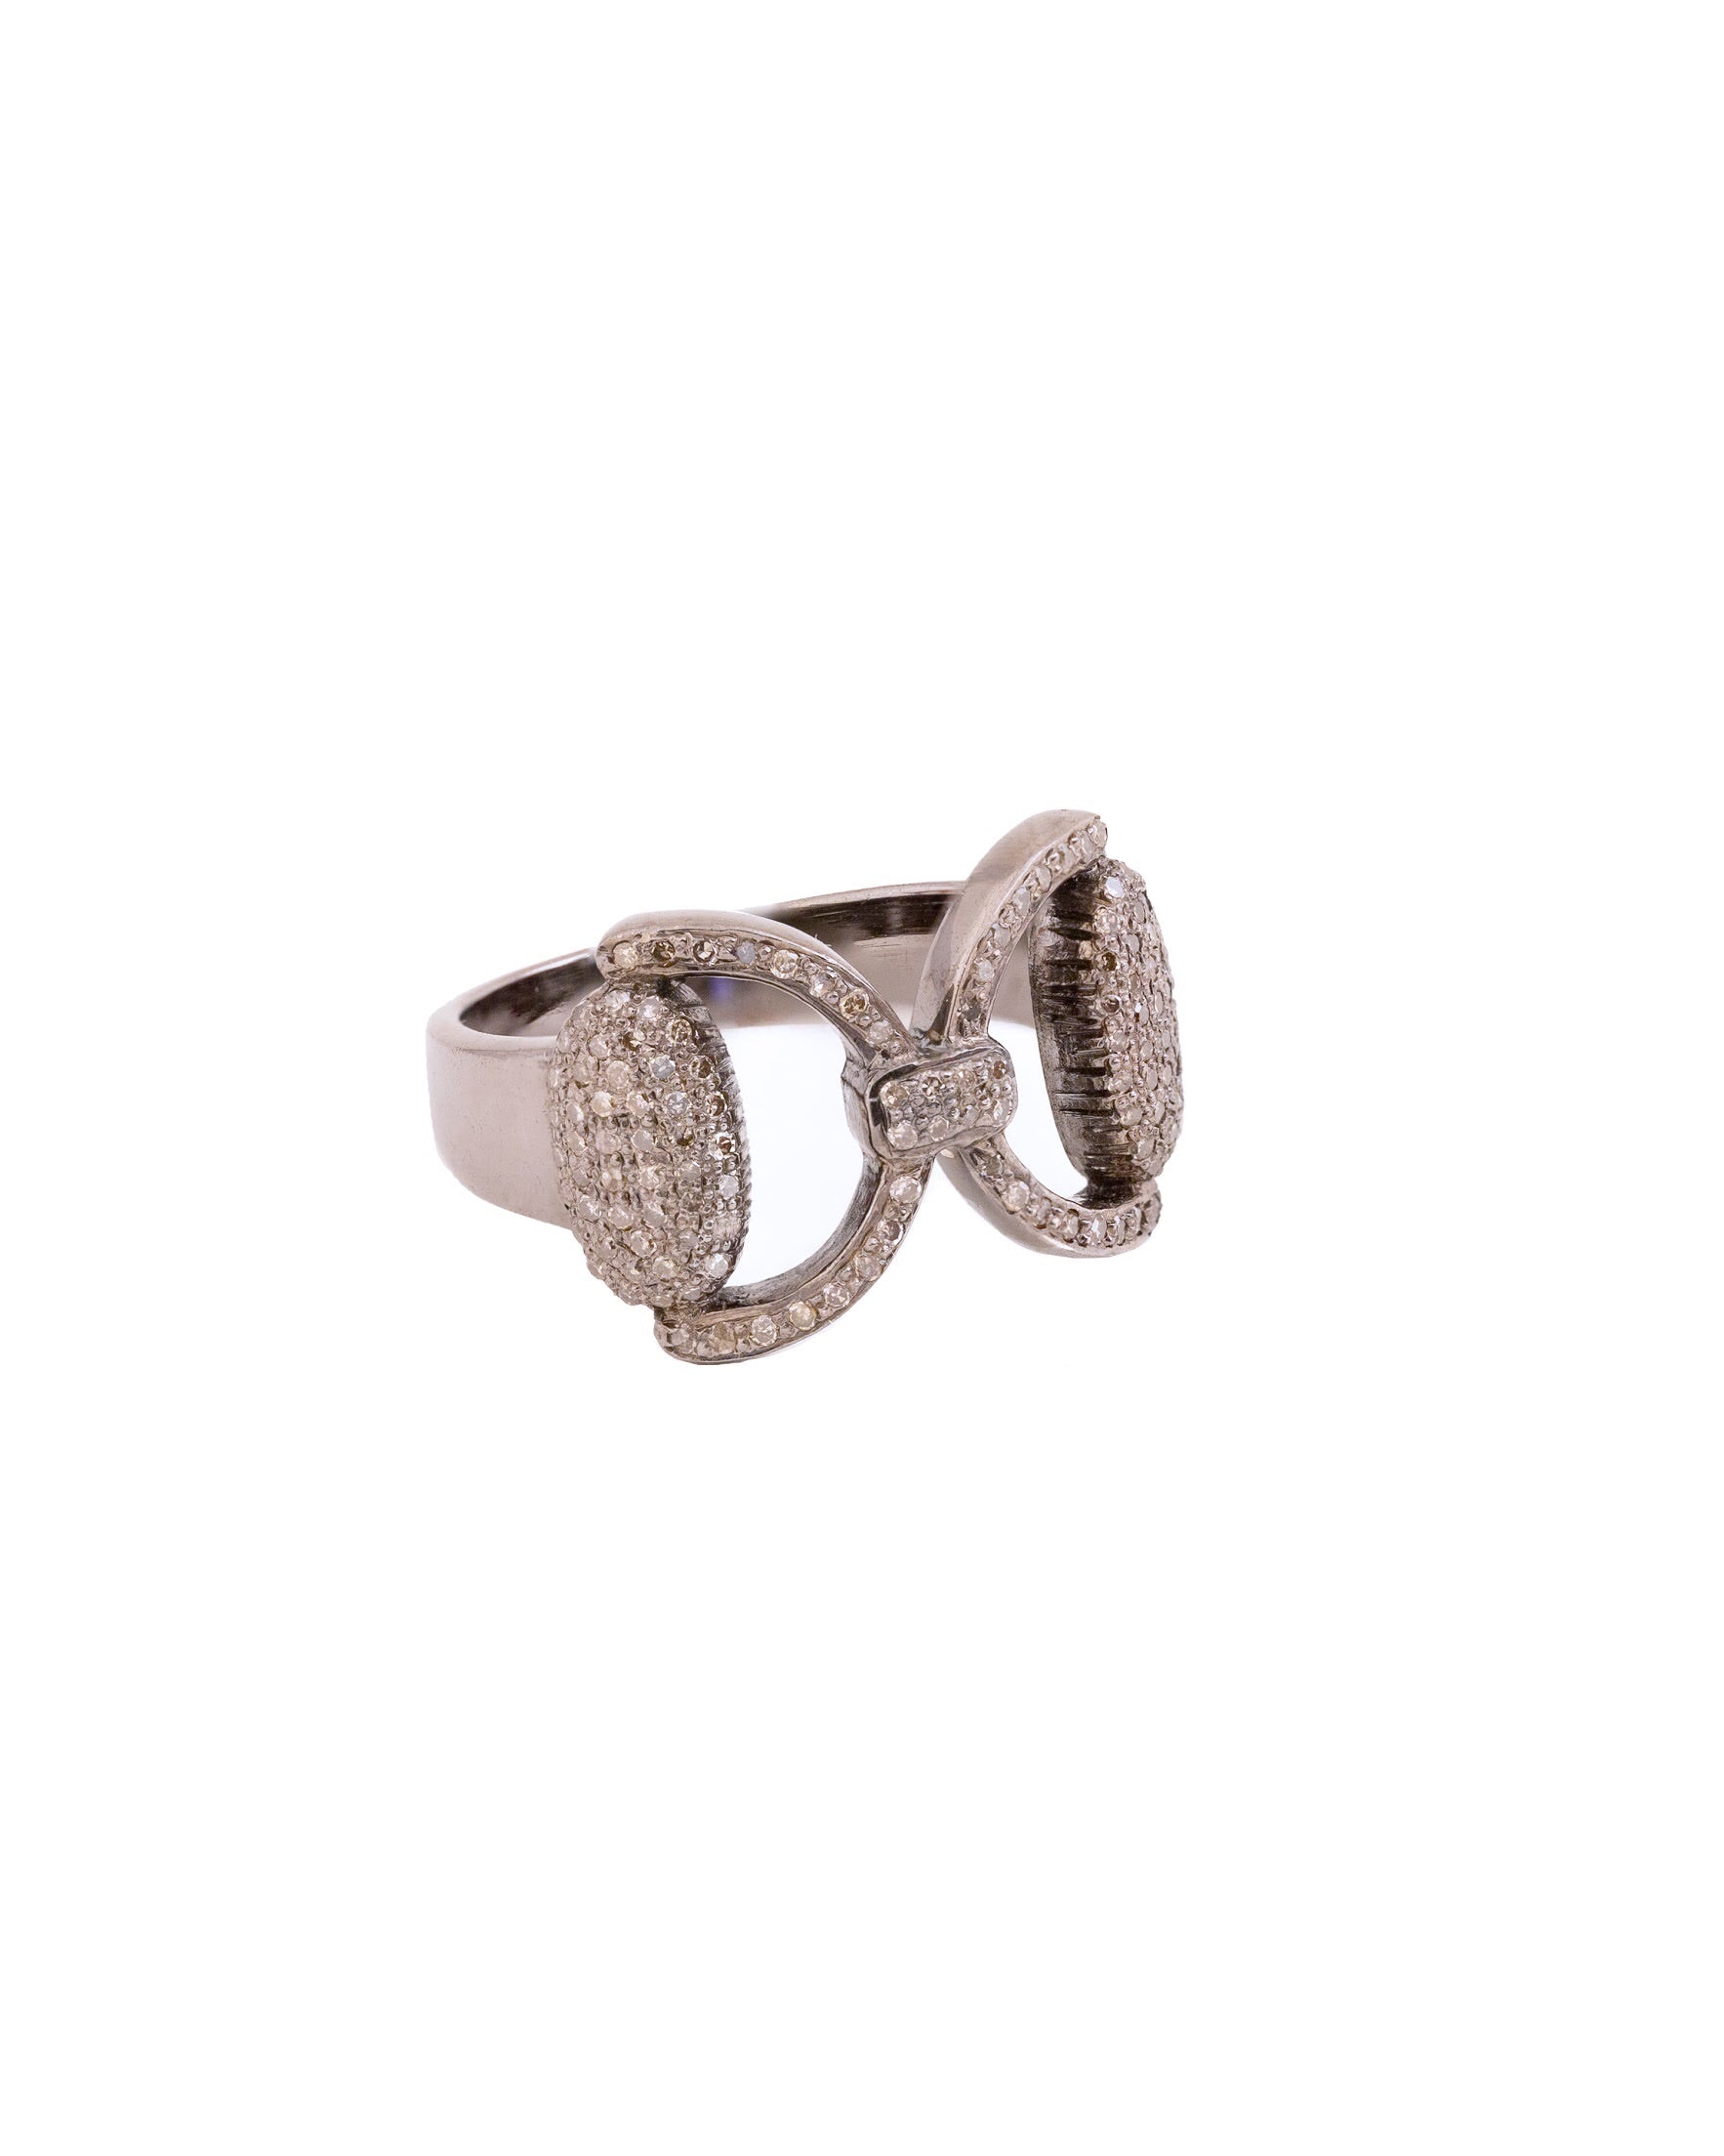 S.Row Designs Pave Diamond Bit Ring